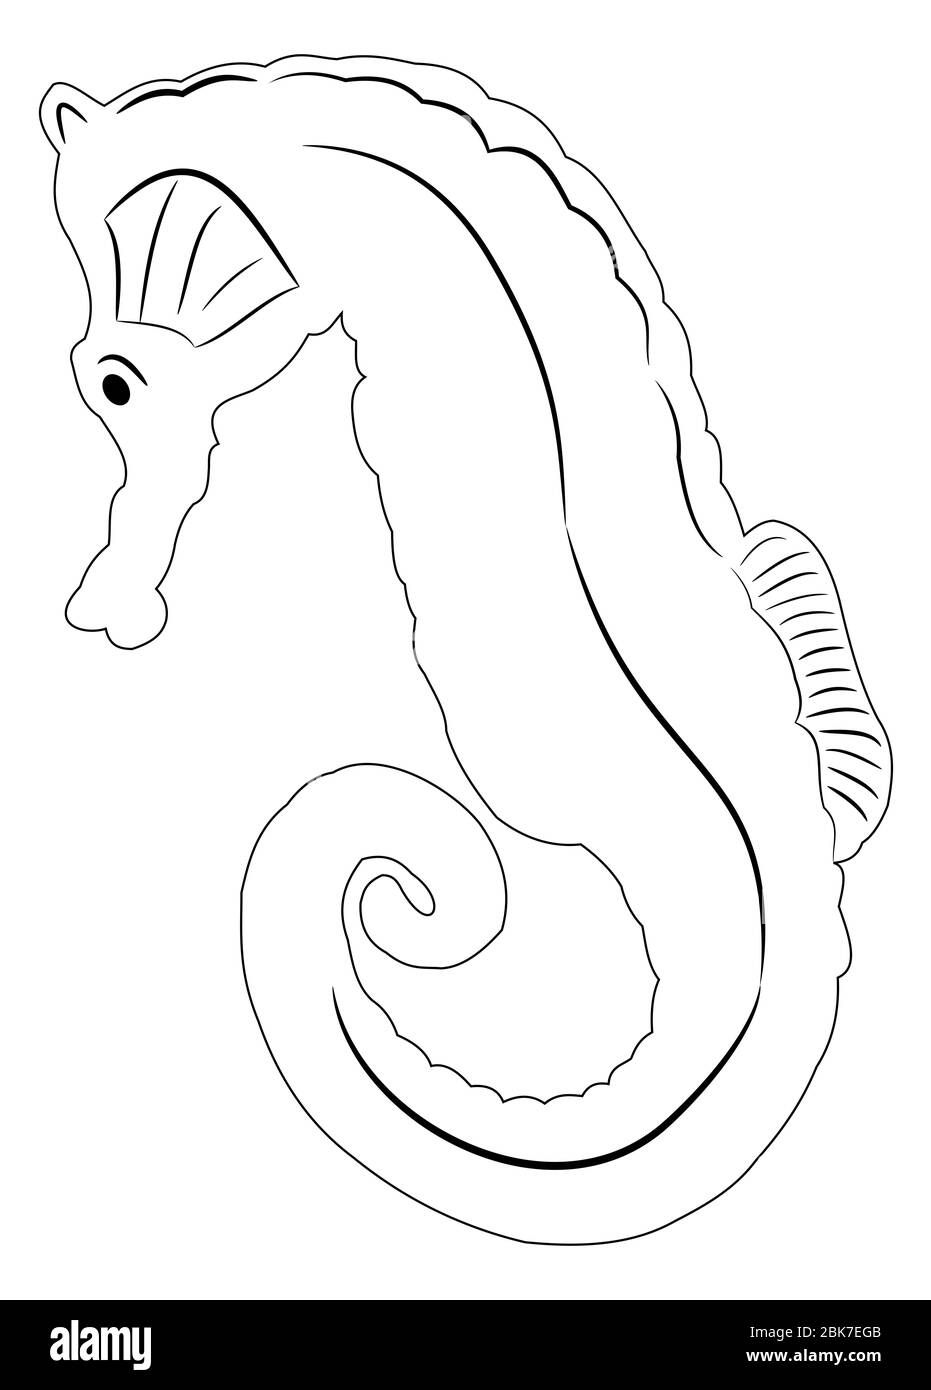 Ilustración de caballo de mar con líneas claras listas para ser coloreadas y utilizadas para algún diseño Foto de stock